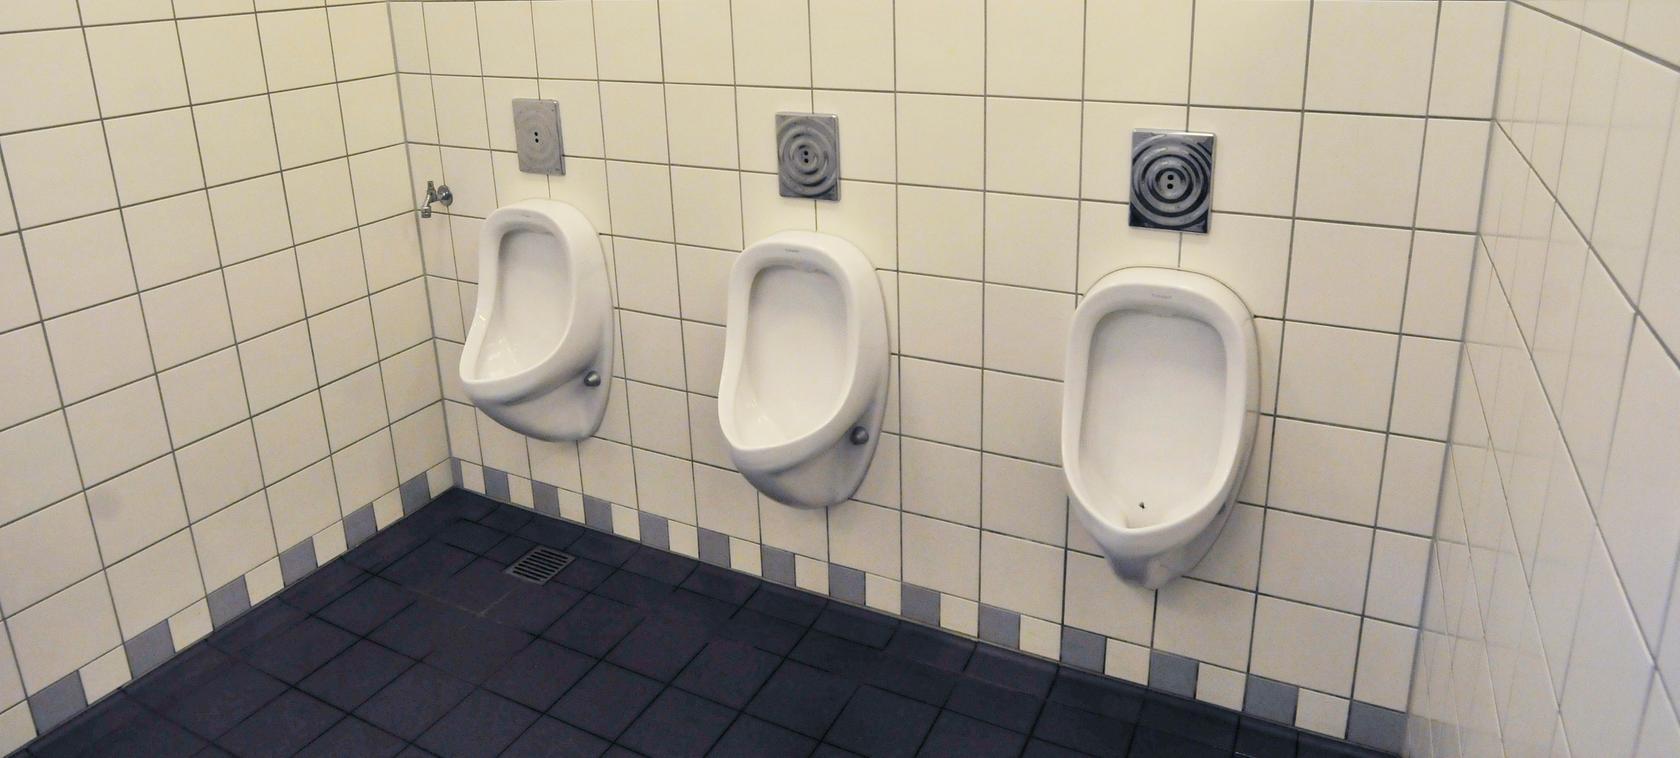 Nickerchen auf der Toilette? Das sieht die Stadt Nürnberg nicht so gerne - und wird deswegen ihre Satzung ändern.